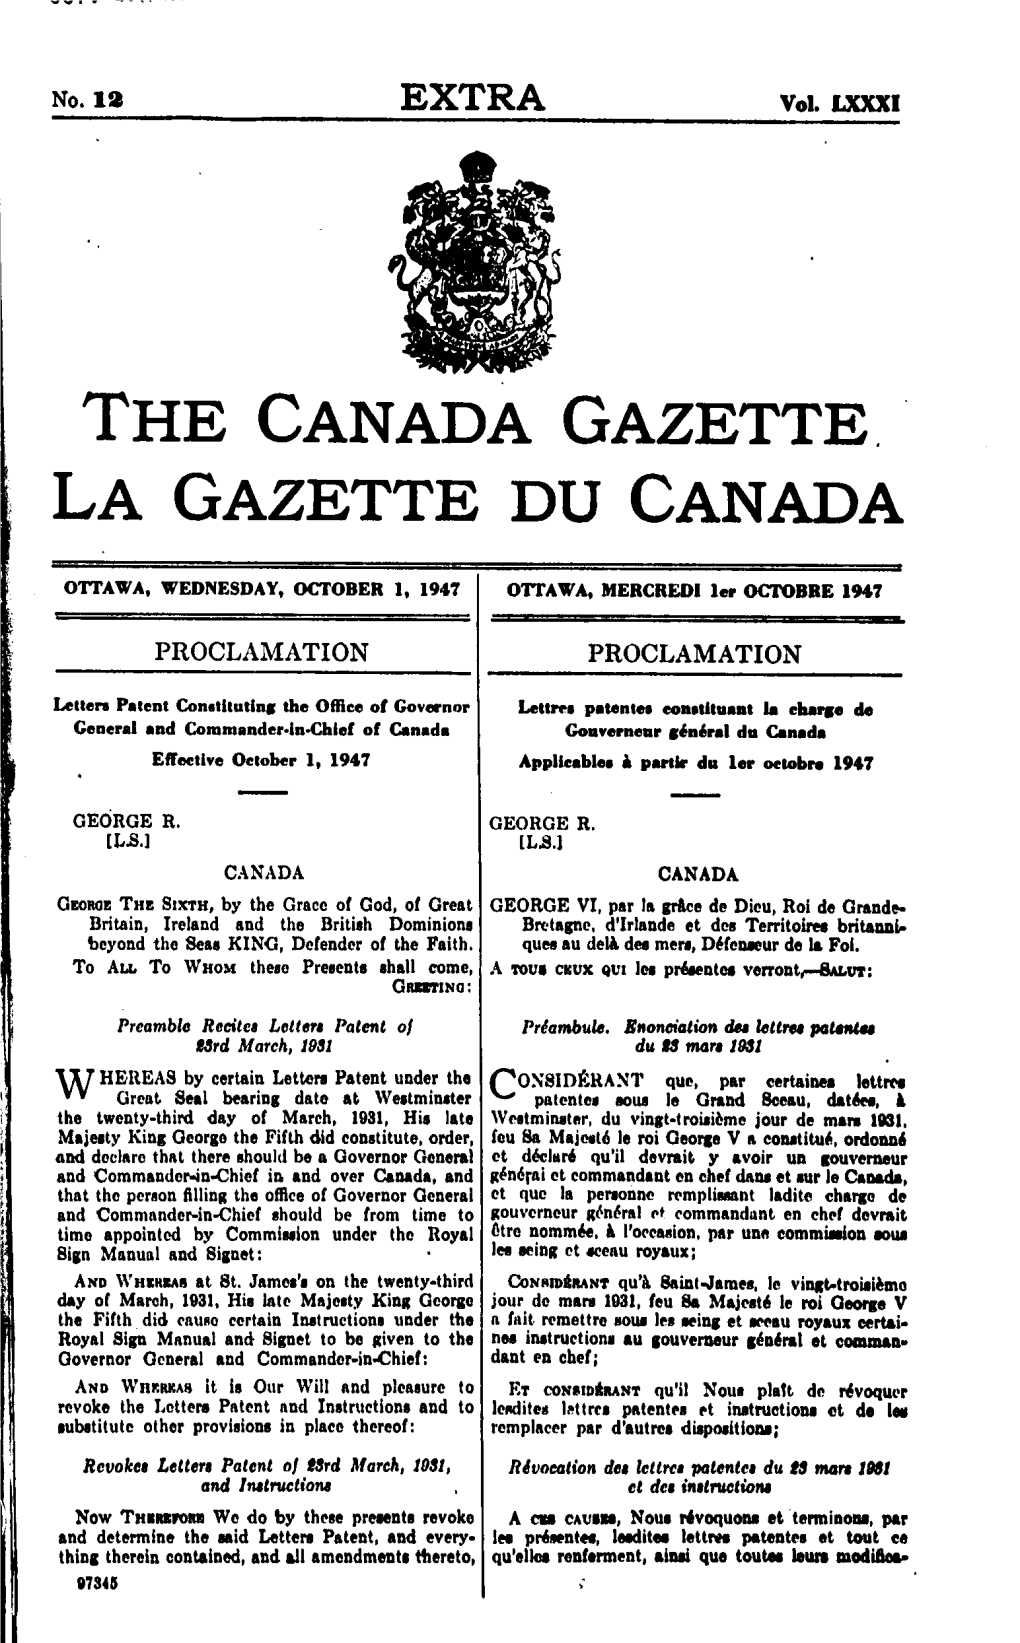 Lettres Patentes Constituant La Charge De Gouverneur Général Du Canada